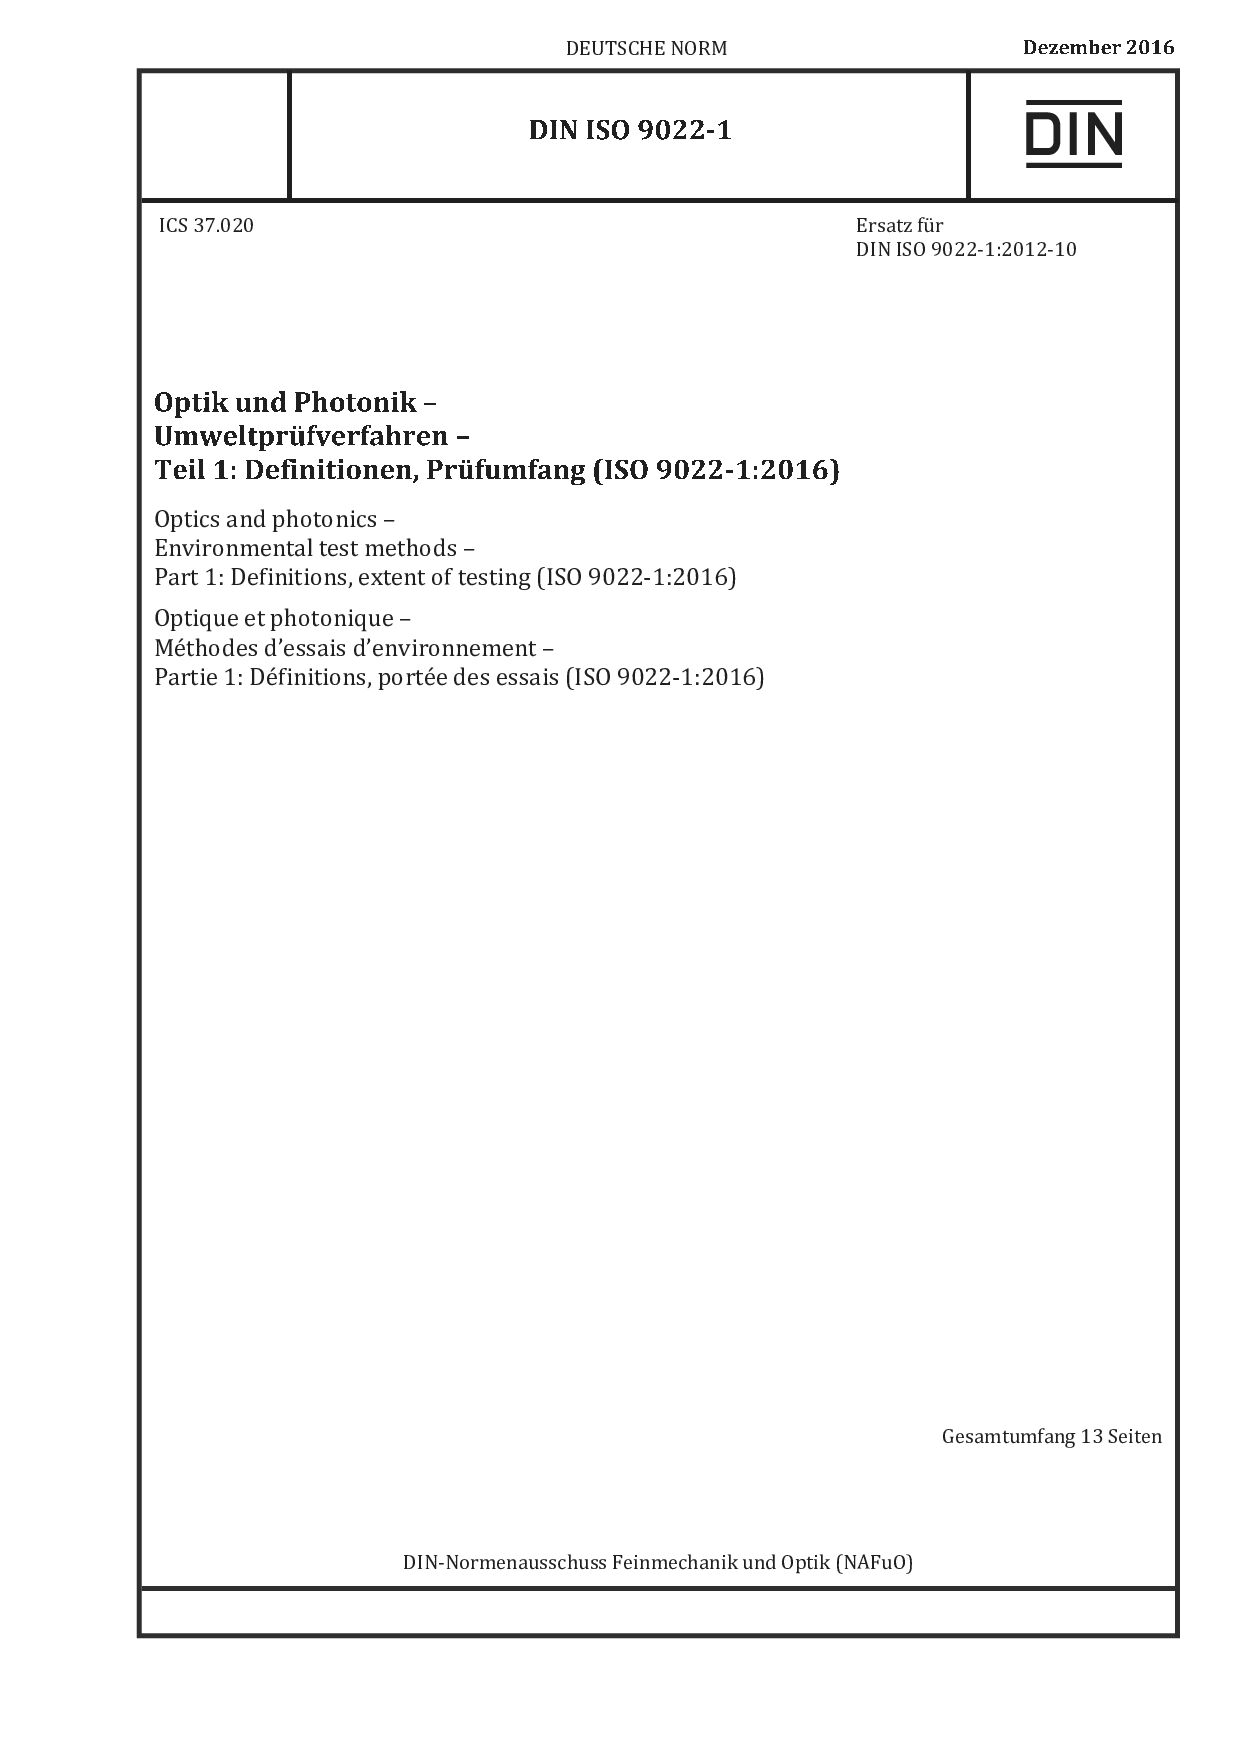 DIN ISO 9022-1:2016封面图